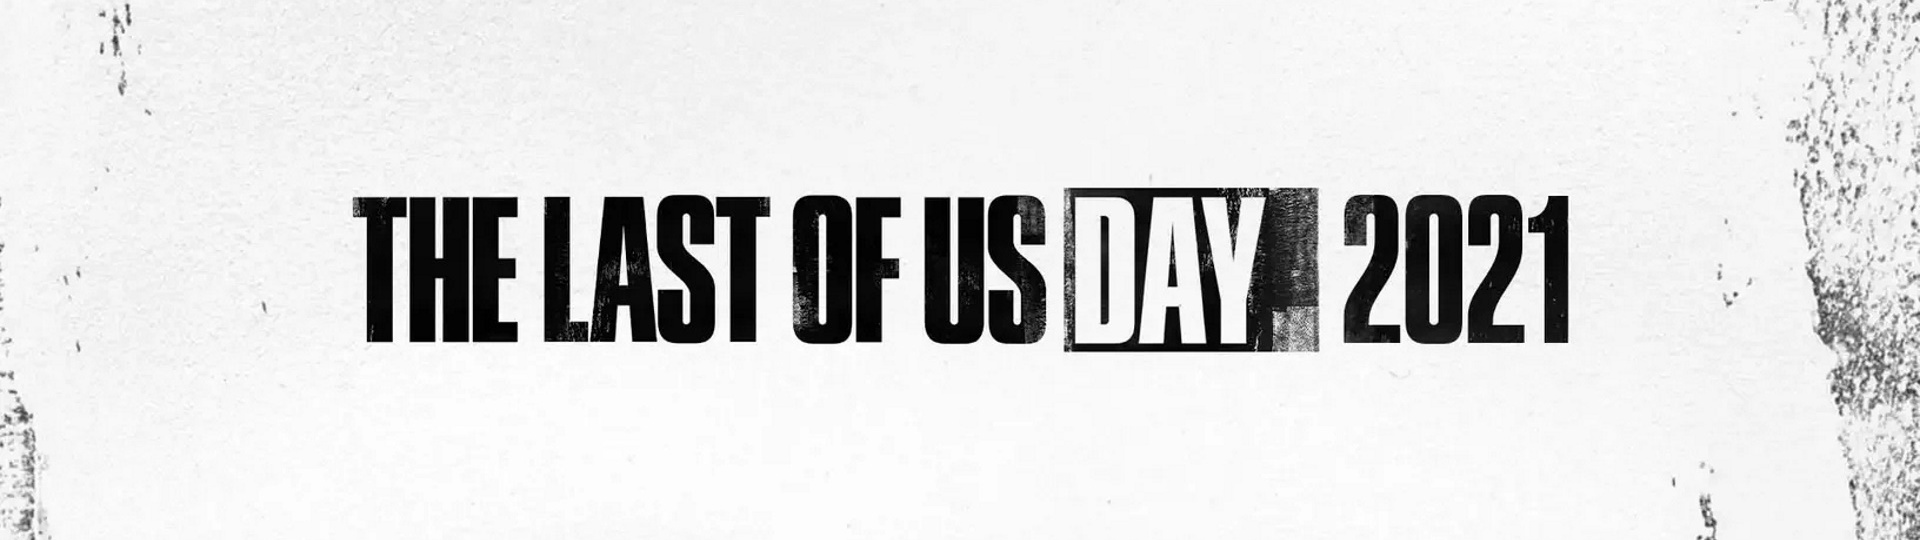 První obrázek z očekávaného seriálu podle Last of Us nevypadá vůbec zle | Novinky